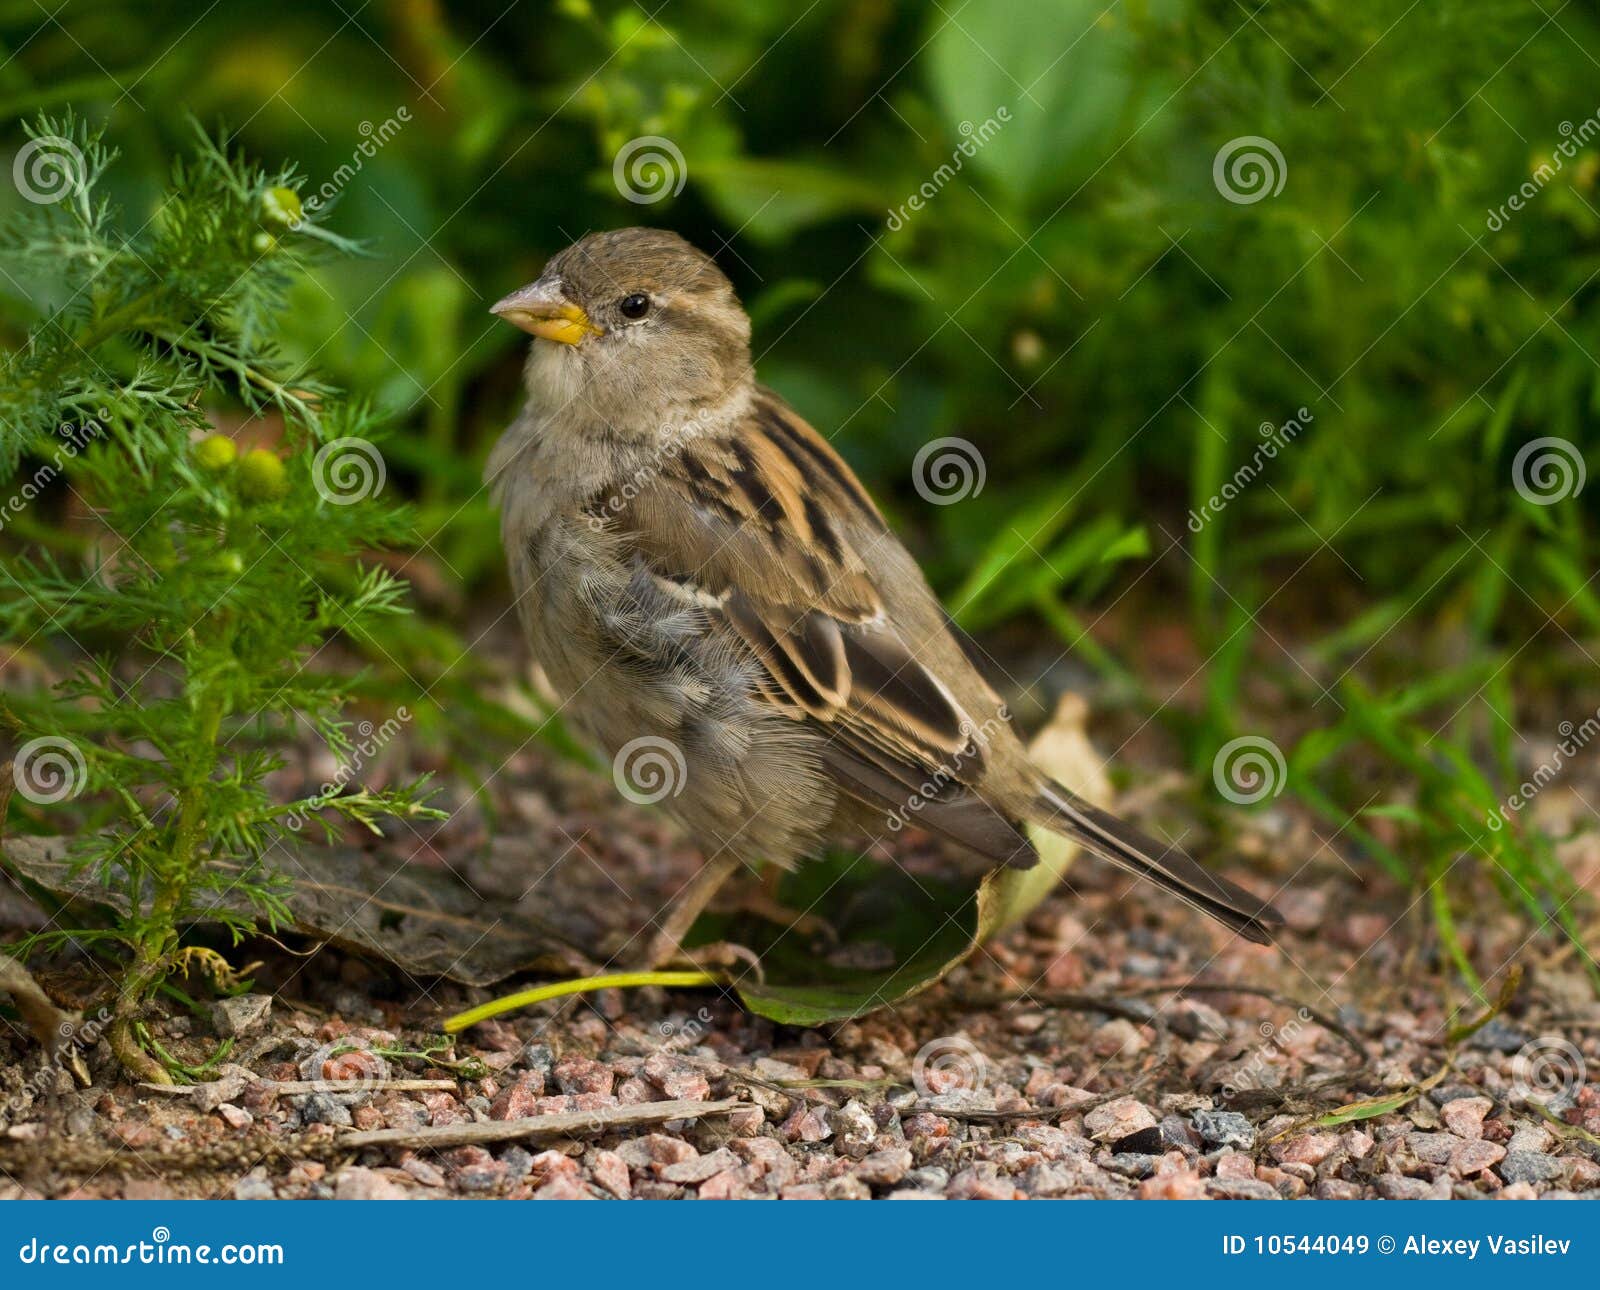 Grey sparrow on ground near horse gowan